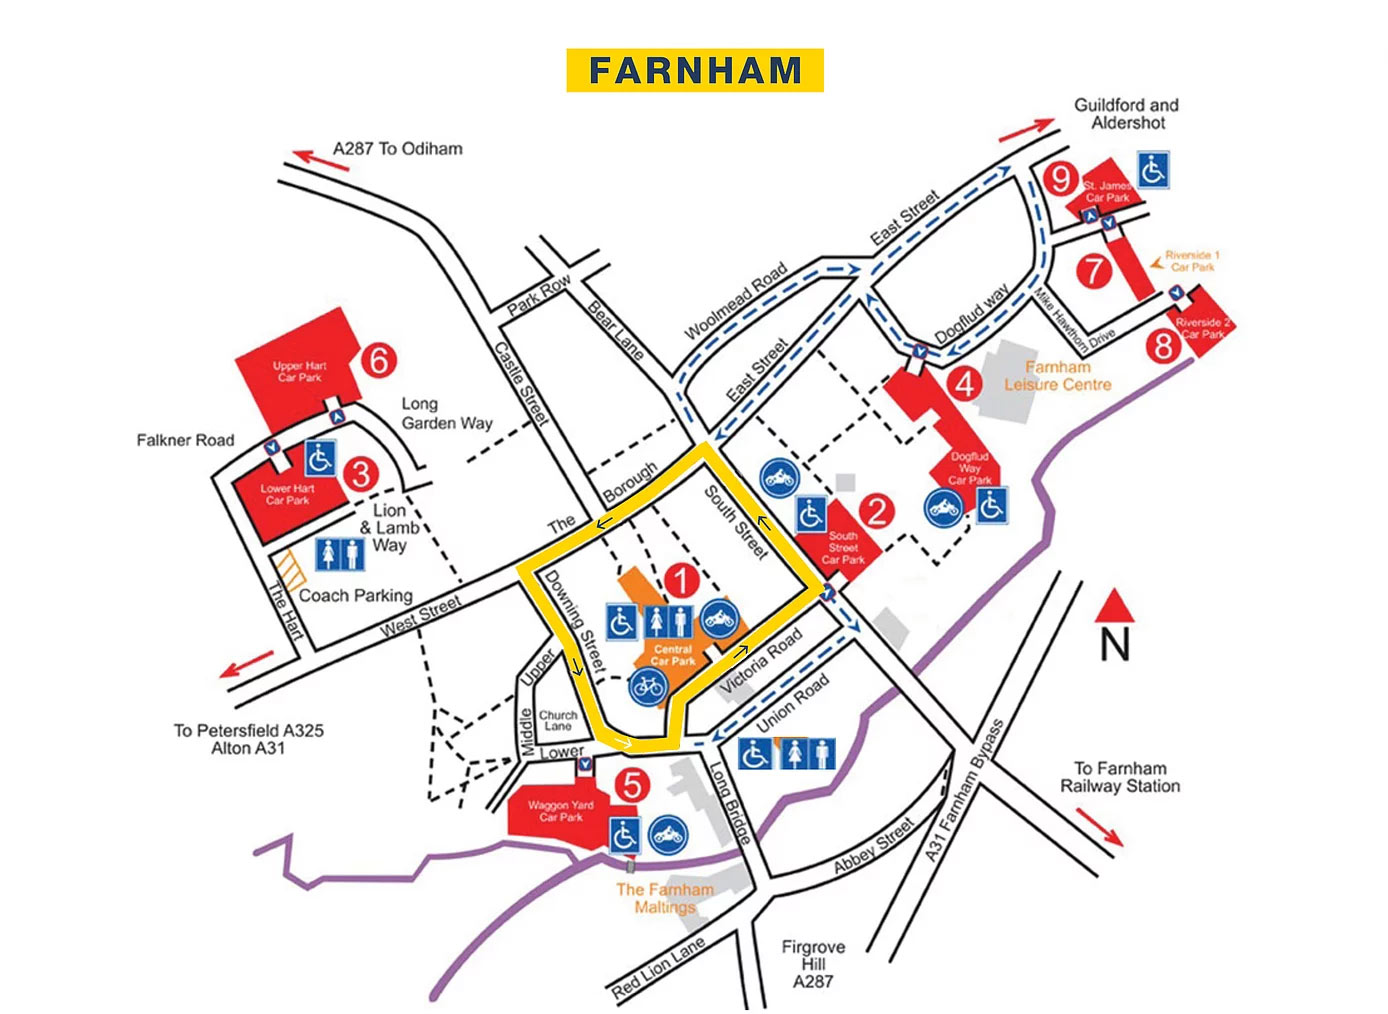 farnham-town-centre-races-2019-route-map